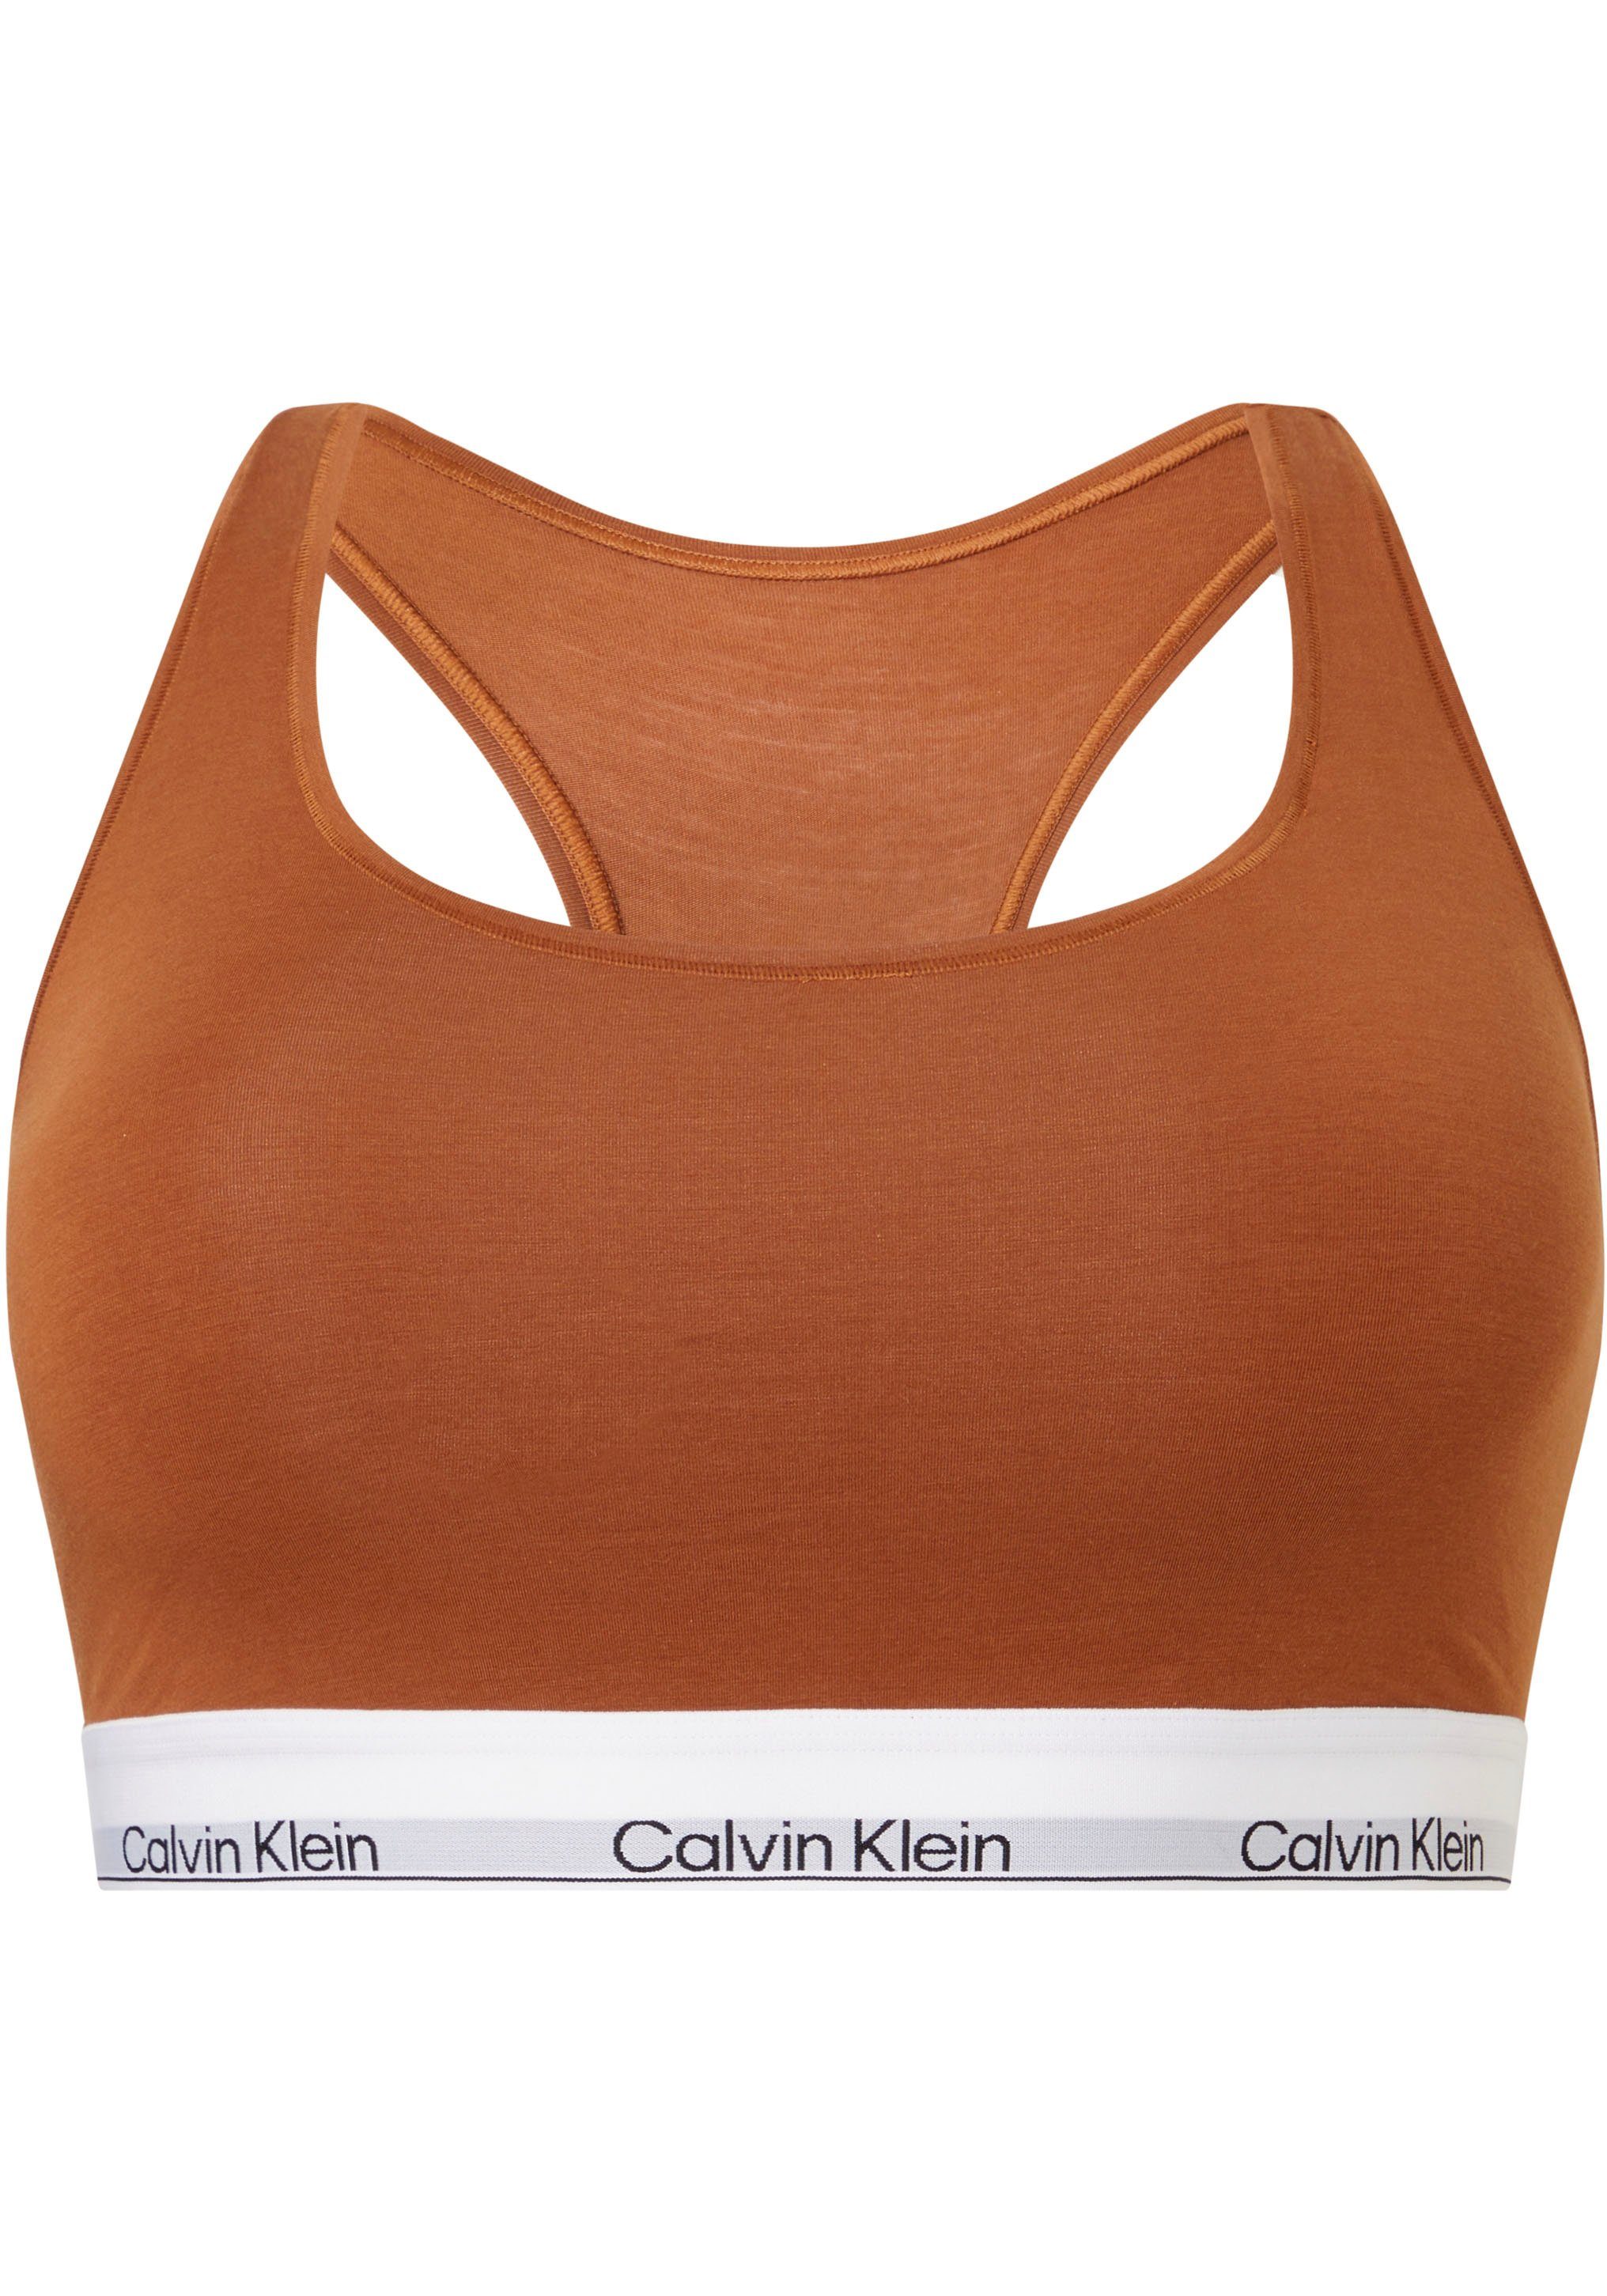 Underwear Calvin Klein Elastik-Unterbrustband mit Bralette dem braun Logodruck auf